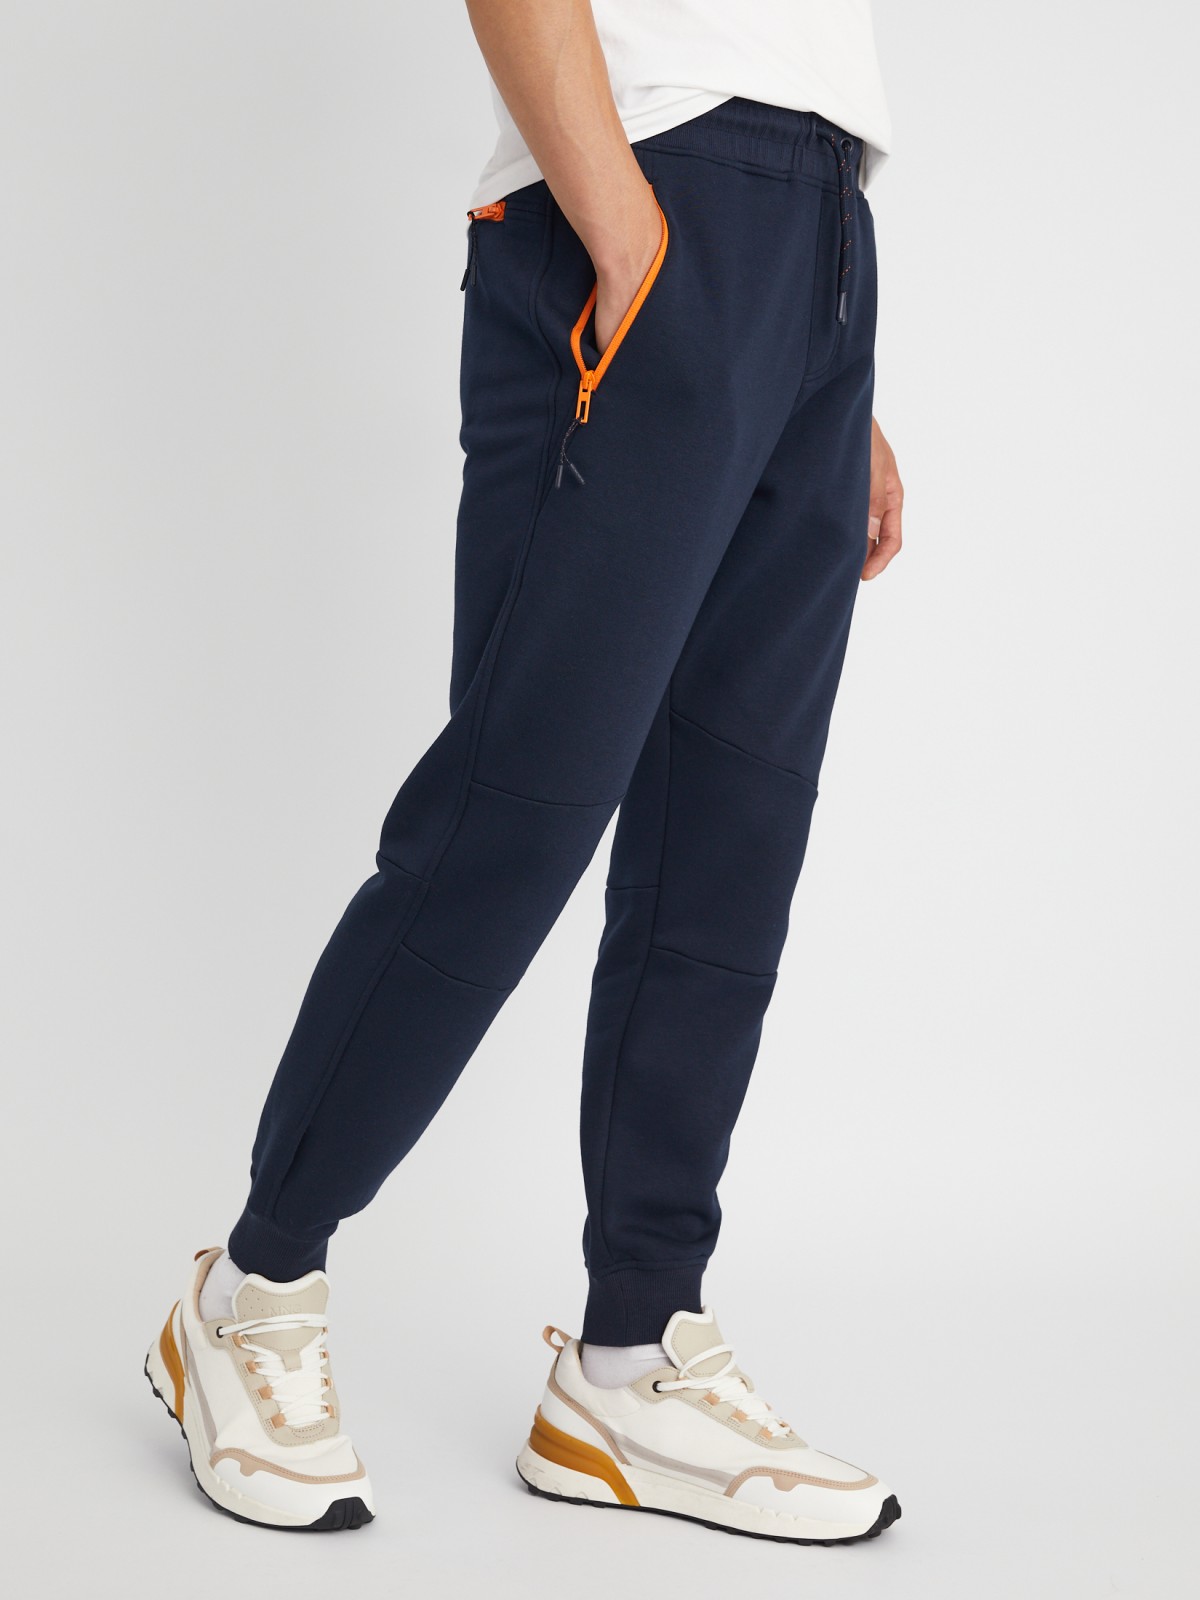 Утеплённые трикотажные брюки-джоггеры в спортивном стиле zolla 21333762F033, цвет синий, размер L - фото 3